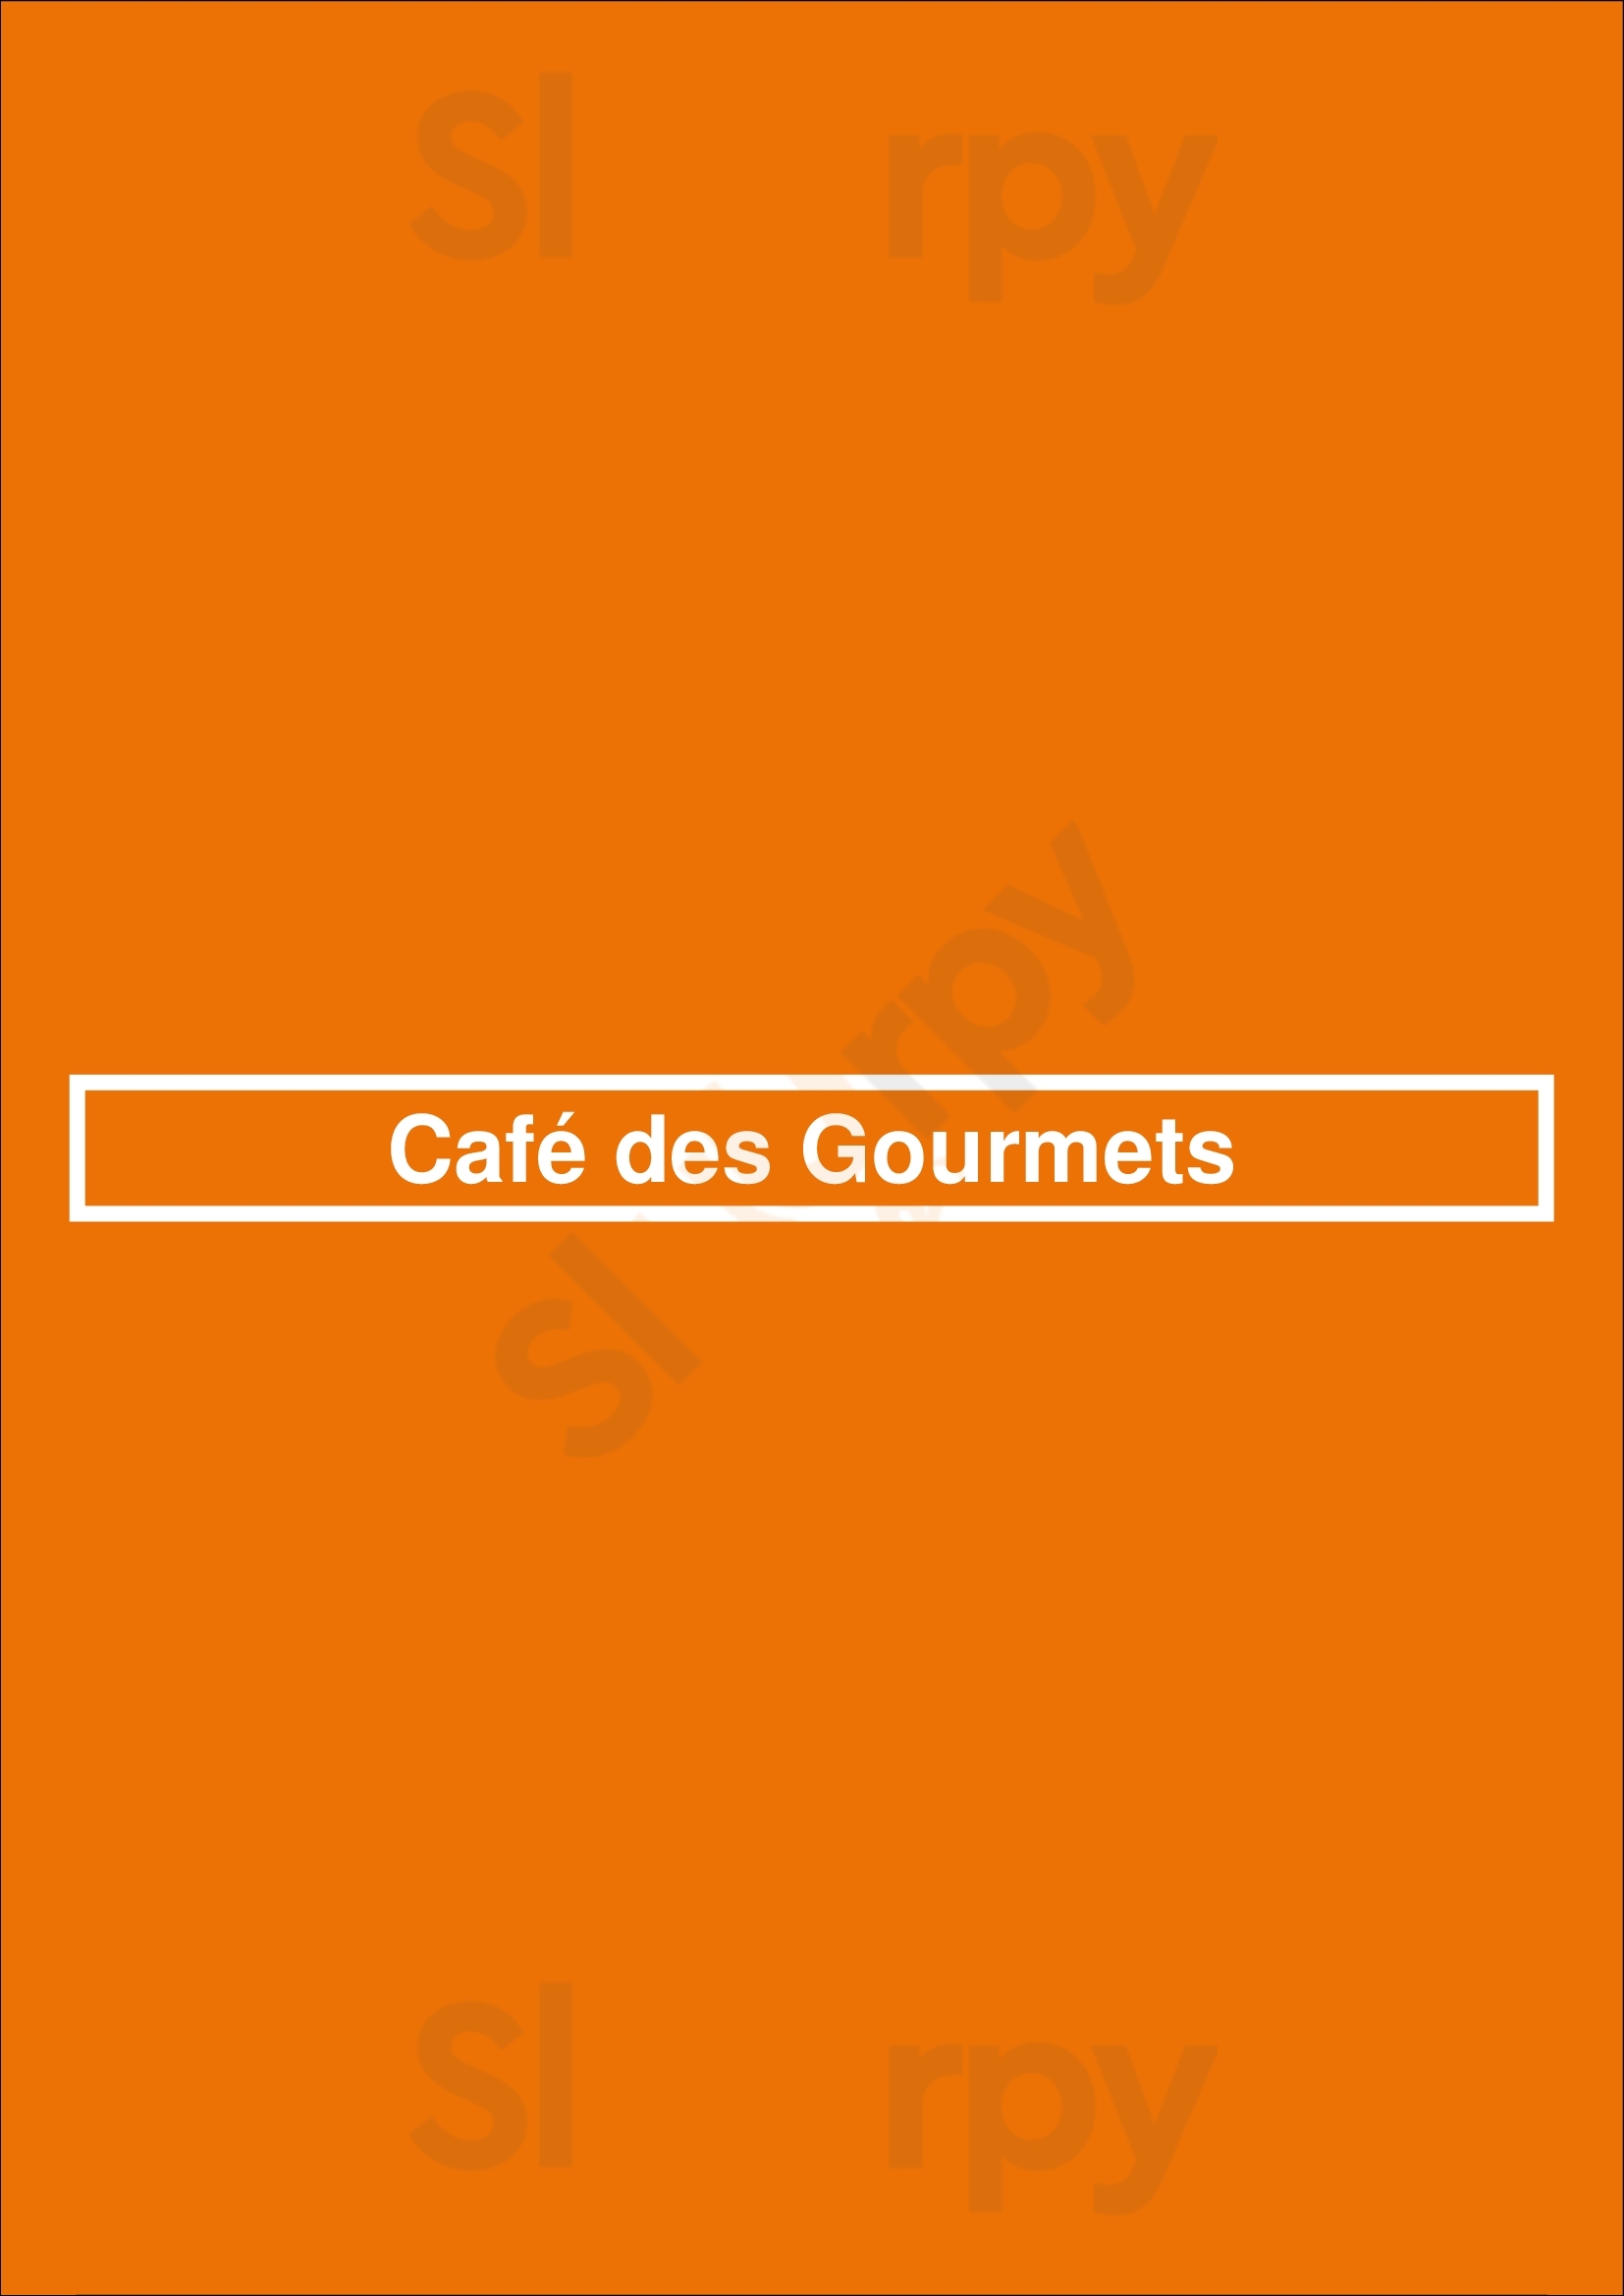 Café Restaurant Des Gourmets Bordeaux Bordeaux Menu - 1